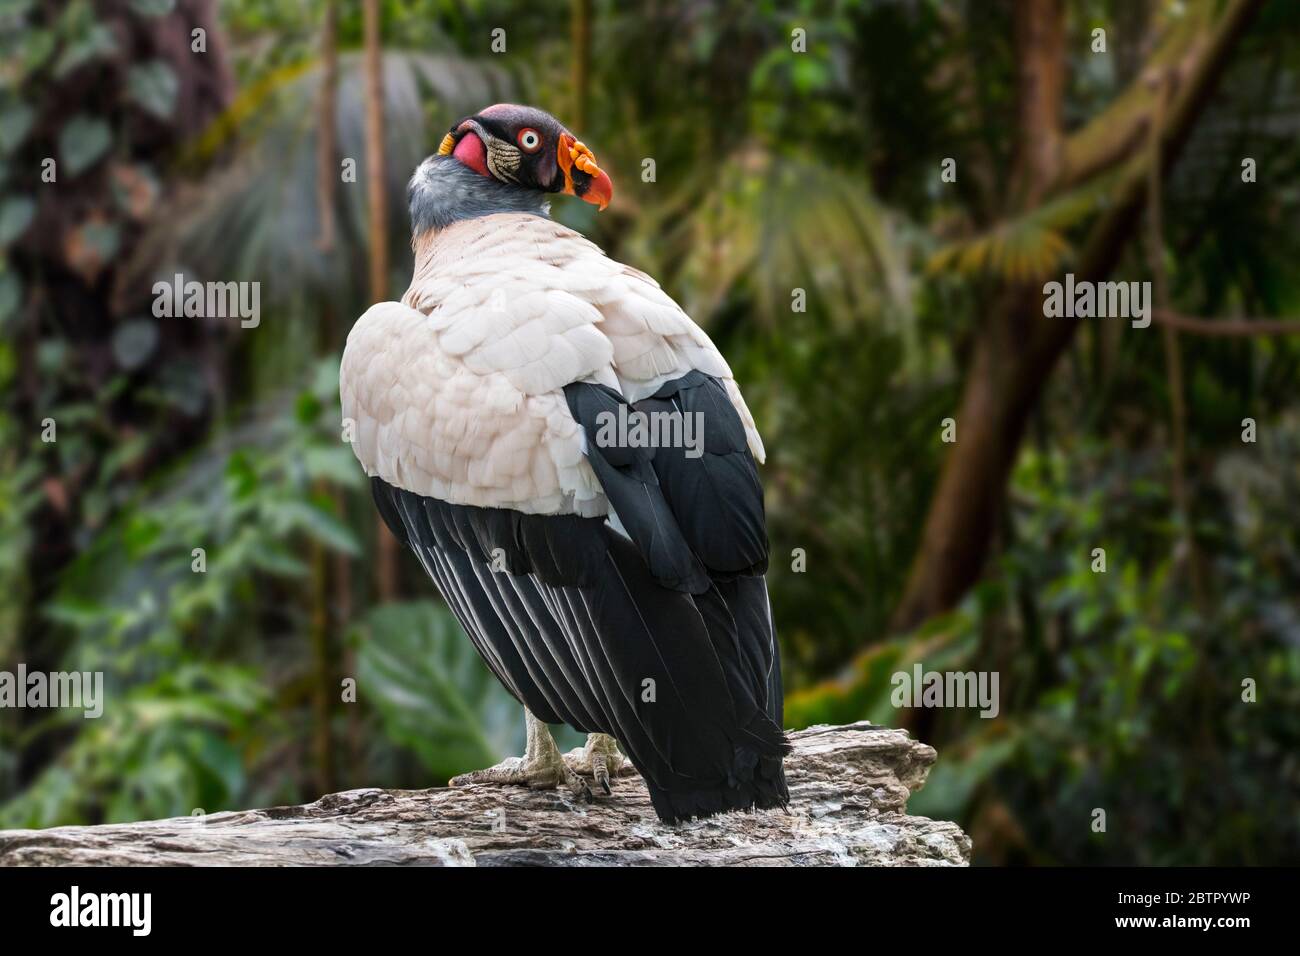 Le vautour du roi (Sarcoramphus papa / Vultur papa) dans la forêt tropicale humide, originaire de l'Amérique centrale et du Sud Banque D'Images